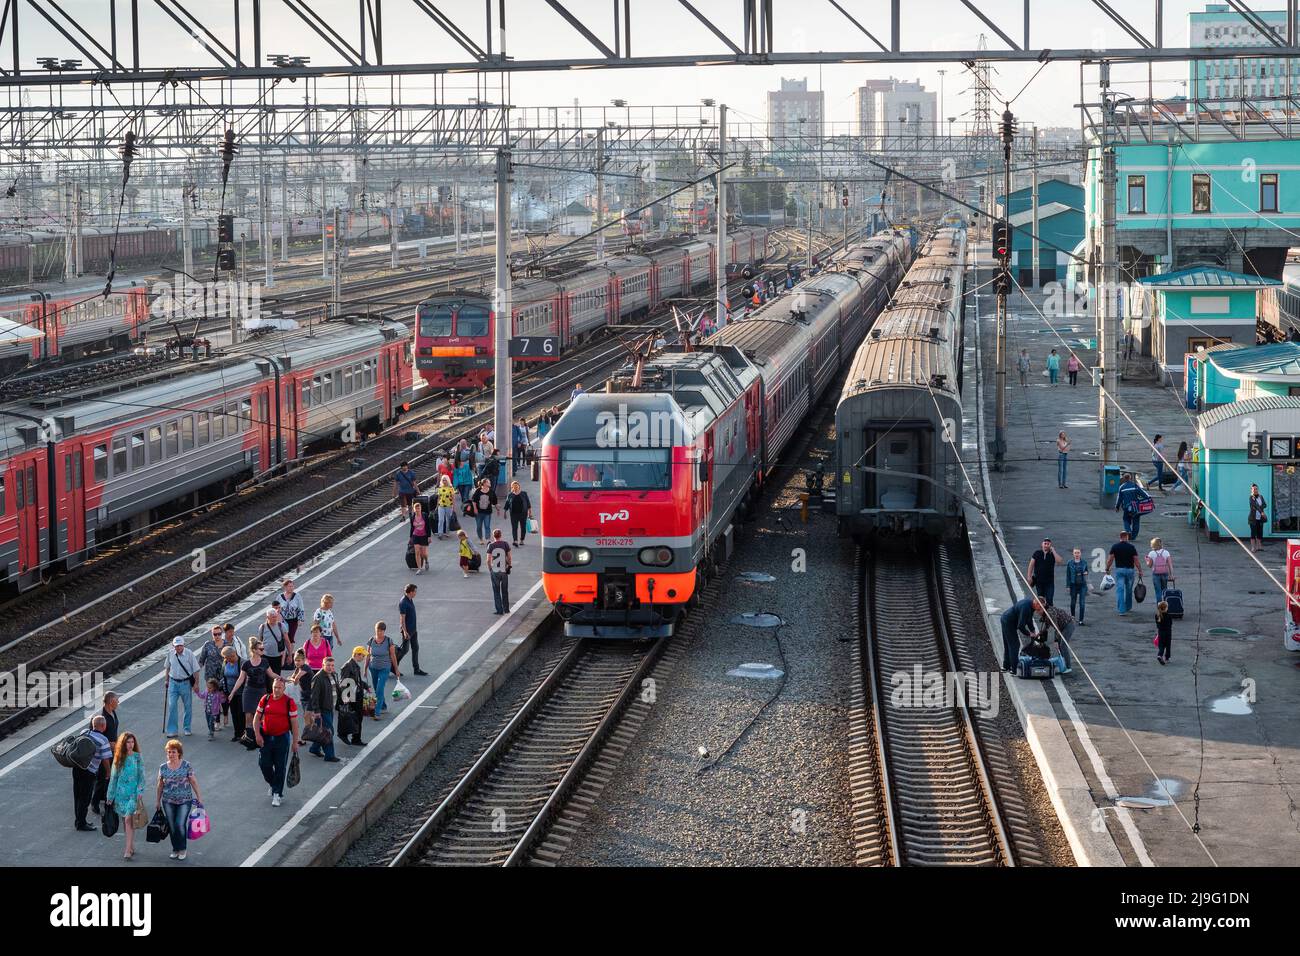 Estación Novosibirsk-Glavny en la ciudad de Novosibirsk, una parada importante a lo largo del Ferrocarril Transiberiano y una de las estaciones más grandes de Rusia. Foto de stock